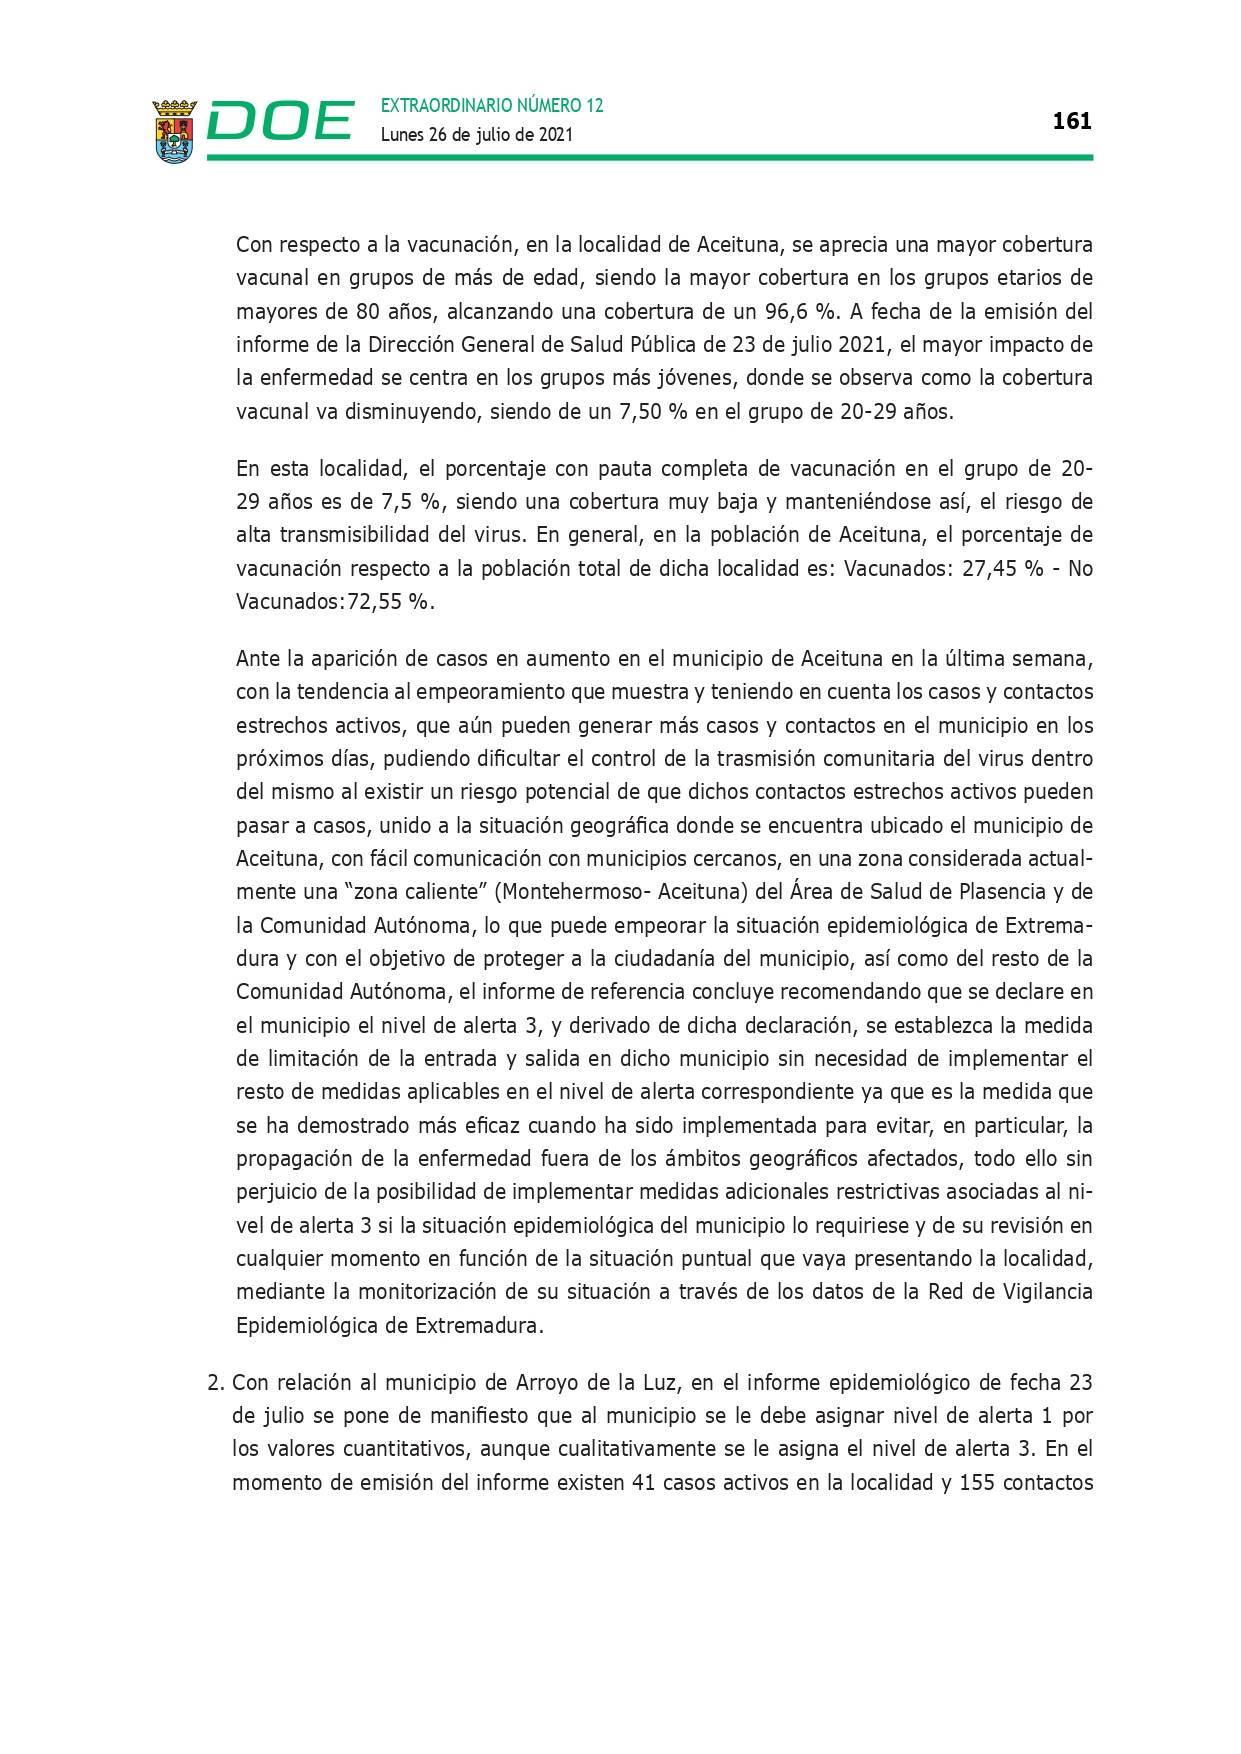 Restricción de la entrada y salida por COVID-19 (julio 2021) - Guadalupe (Cáceres) 7